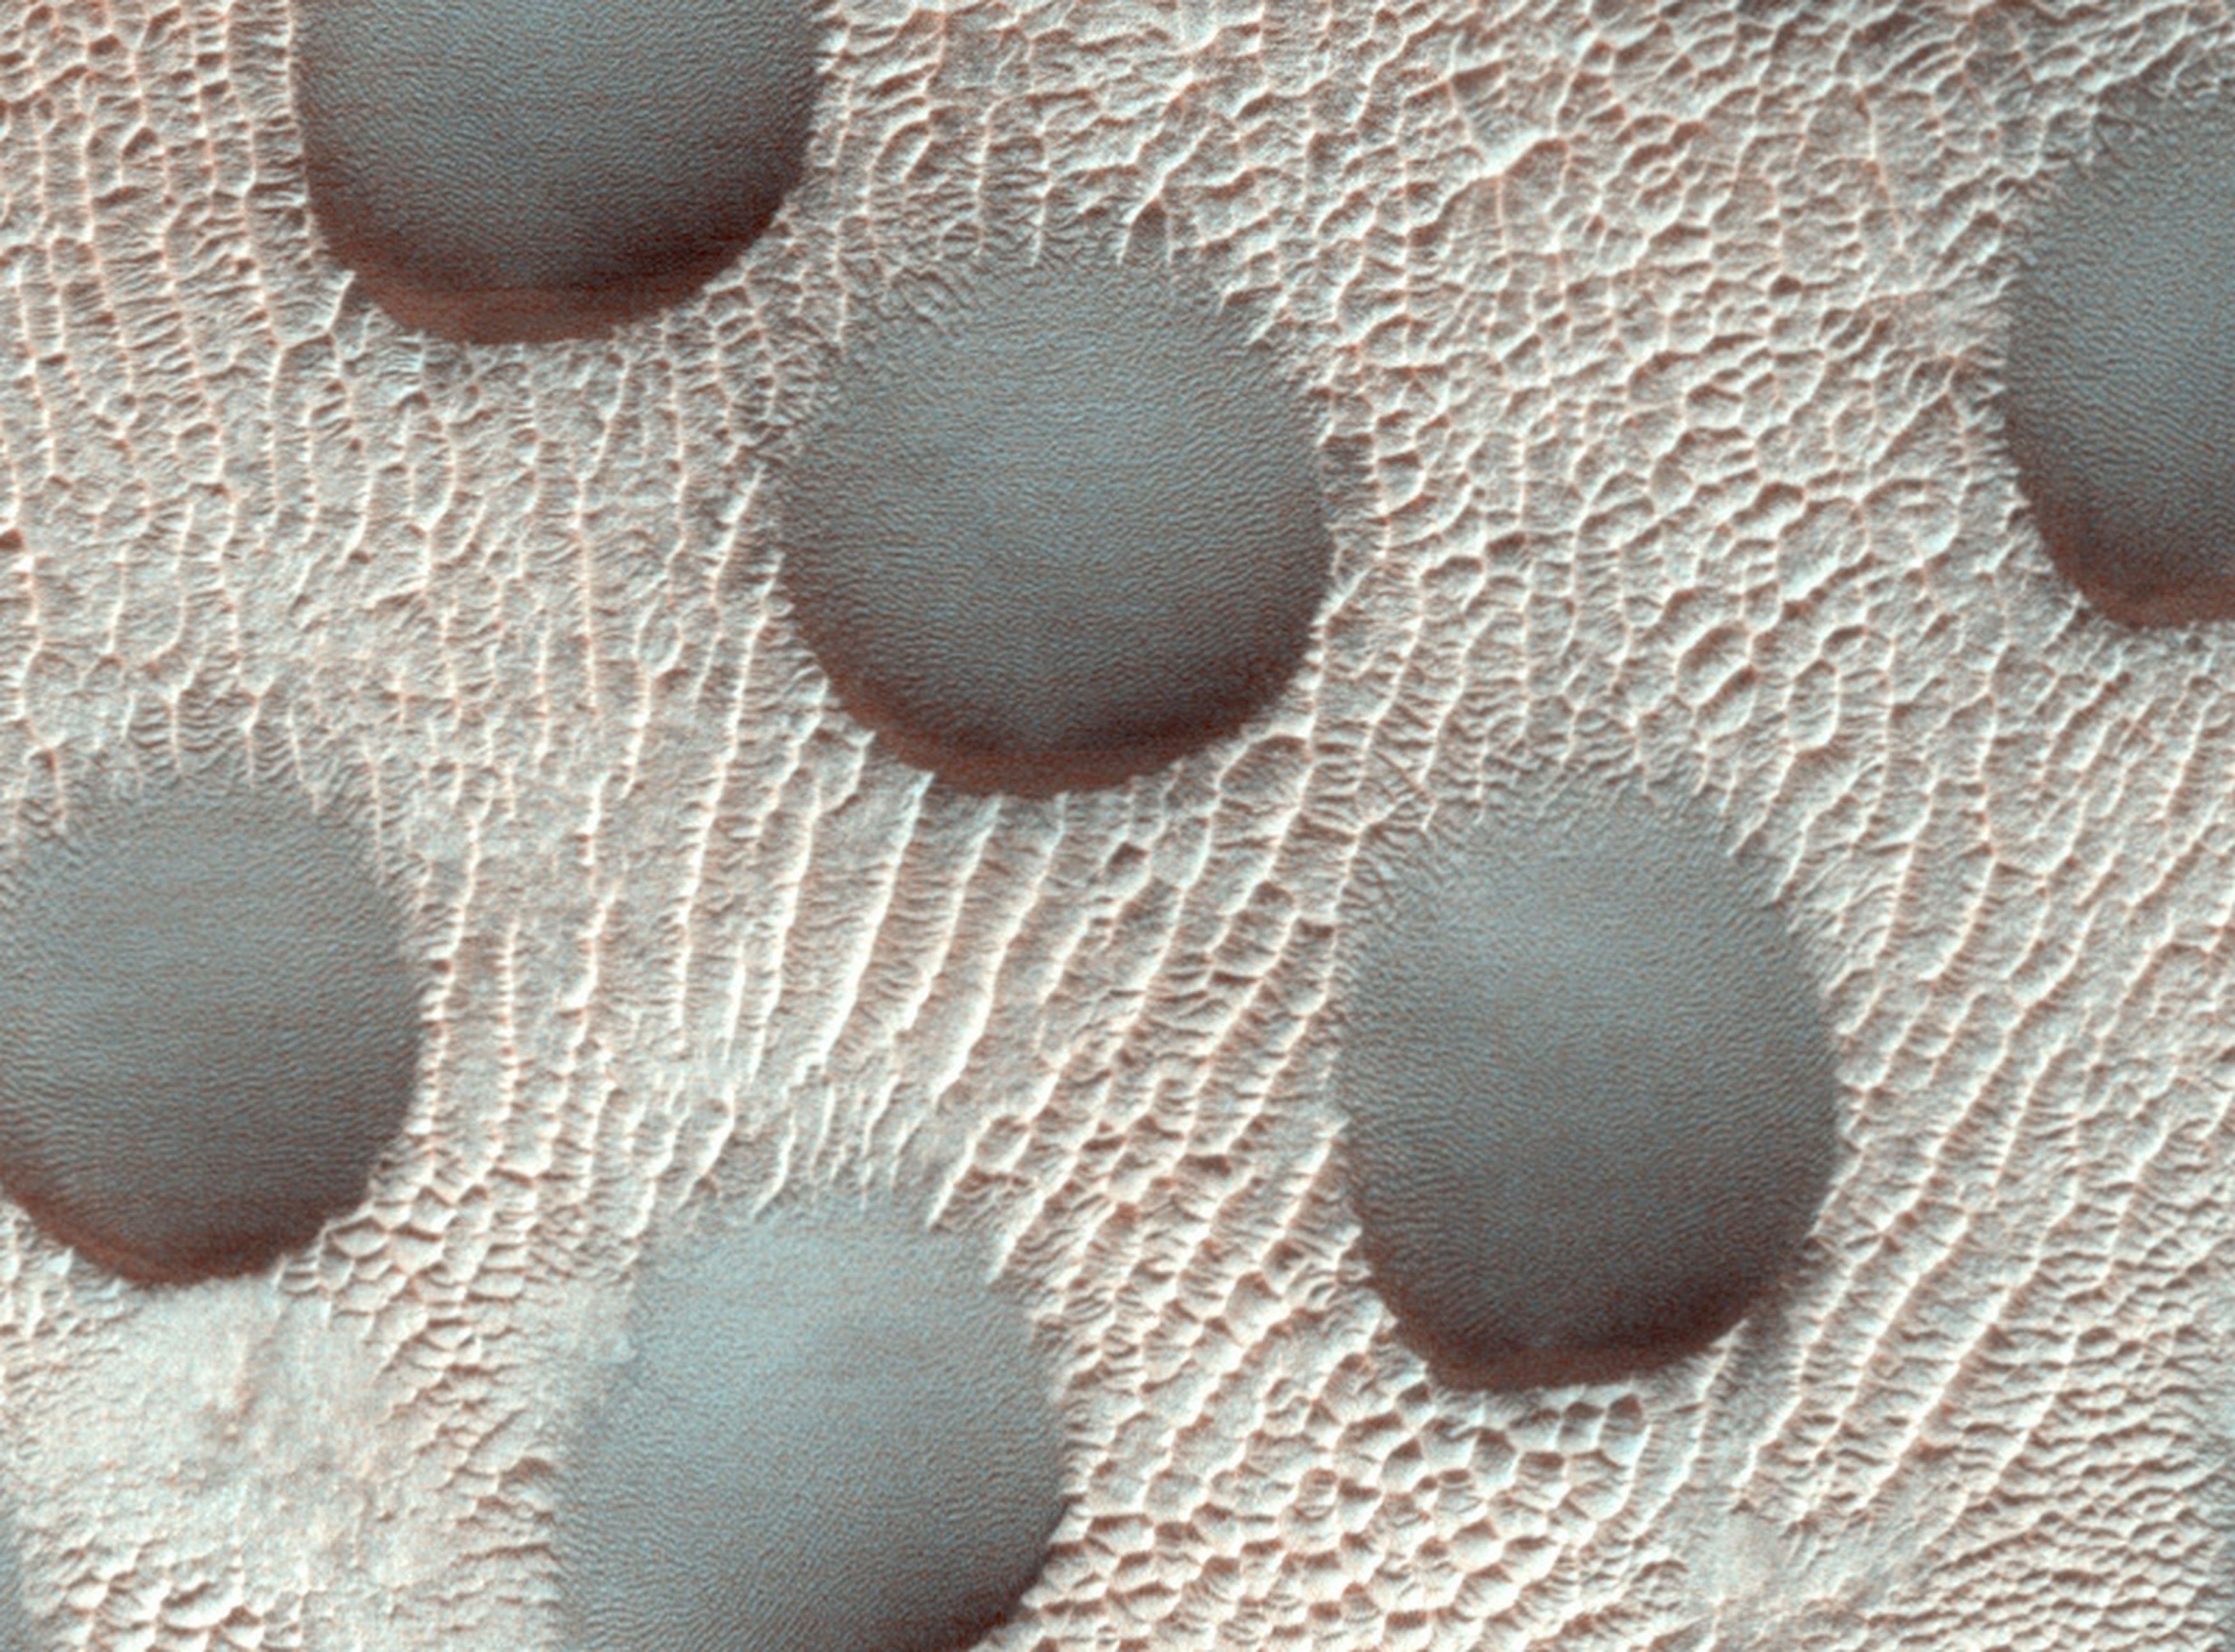 Descubre dunas completamente redondas en Marte, y los científicos están desconcertados